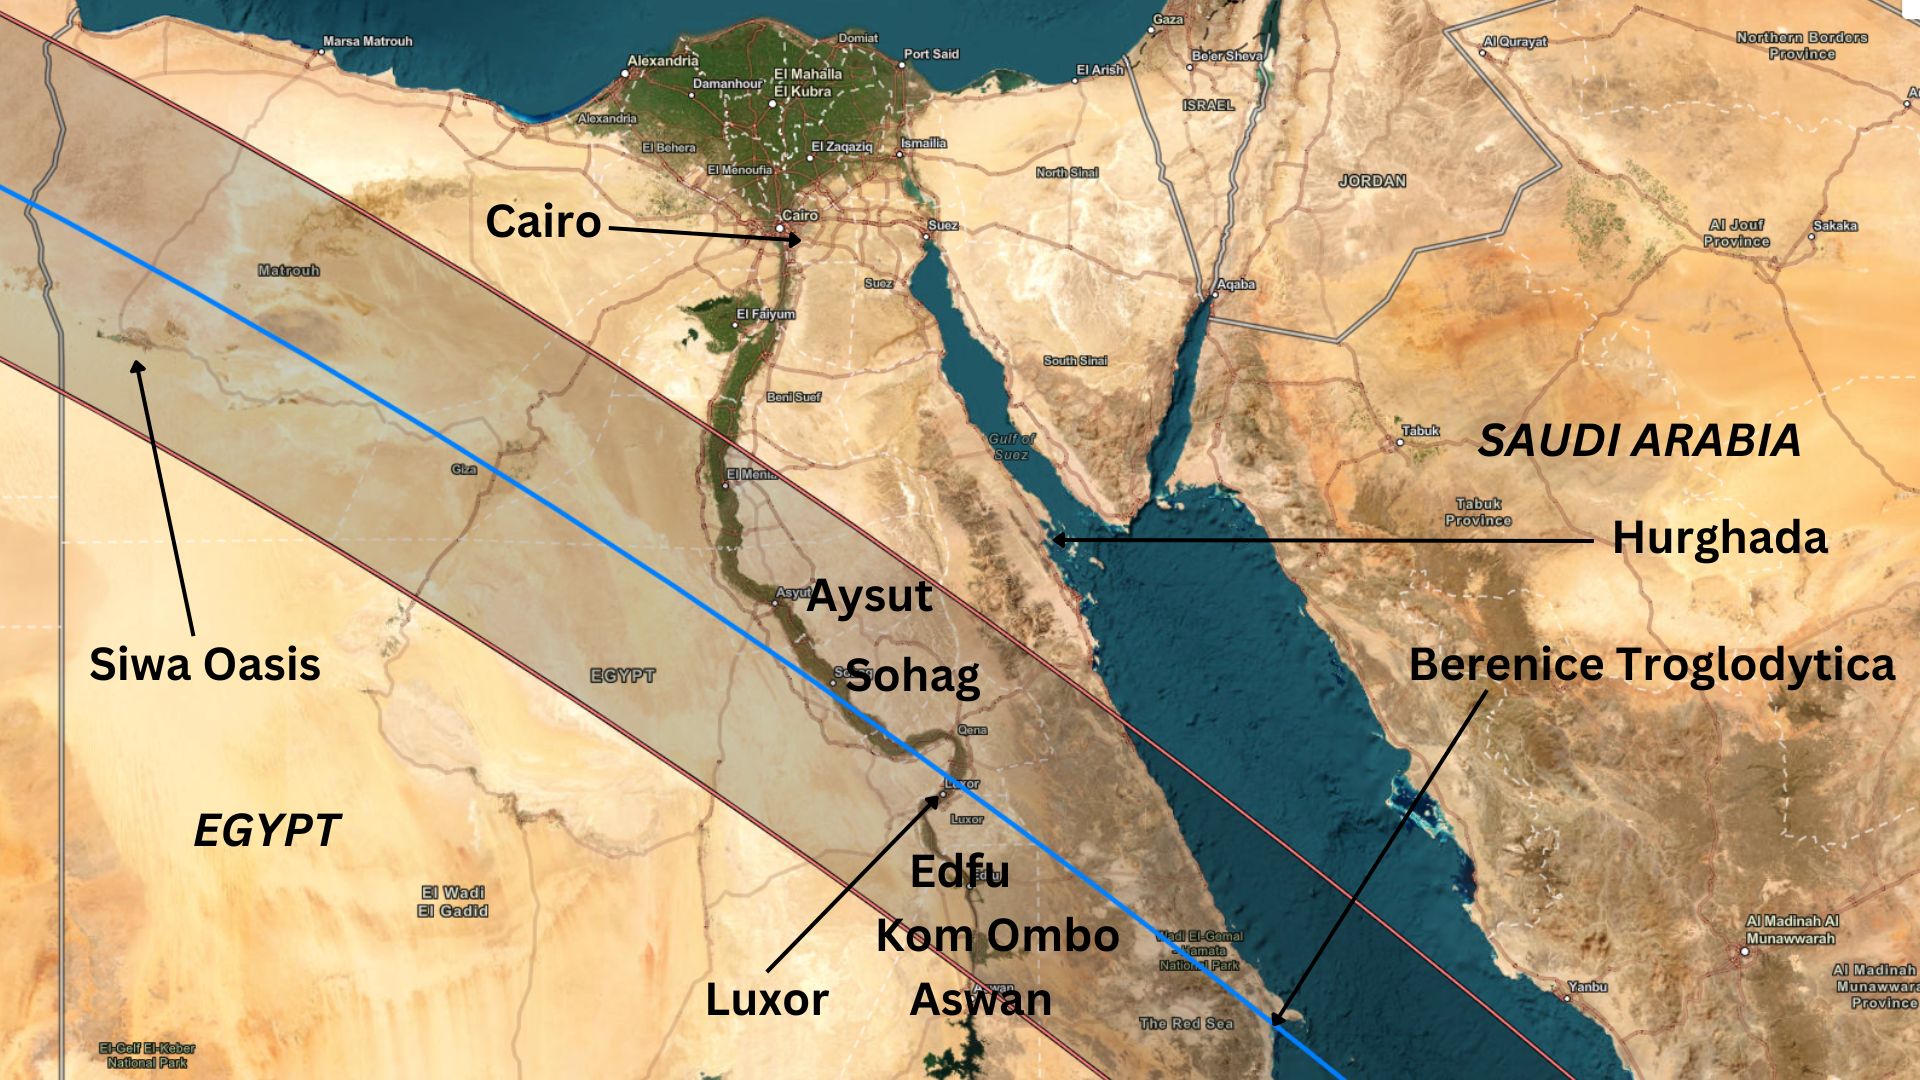 نقشه ای که مسیر کسوف را بر فراز شمال آفریقا، از جمله سیوا واحه و اقصر در مصر نشان می دهد.